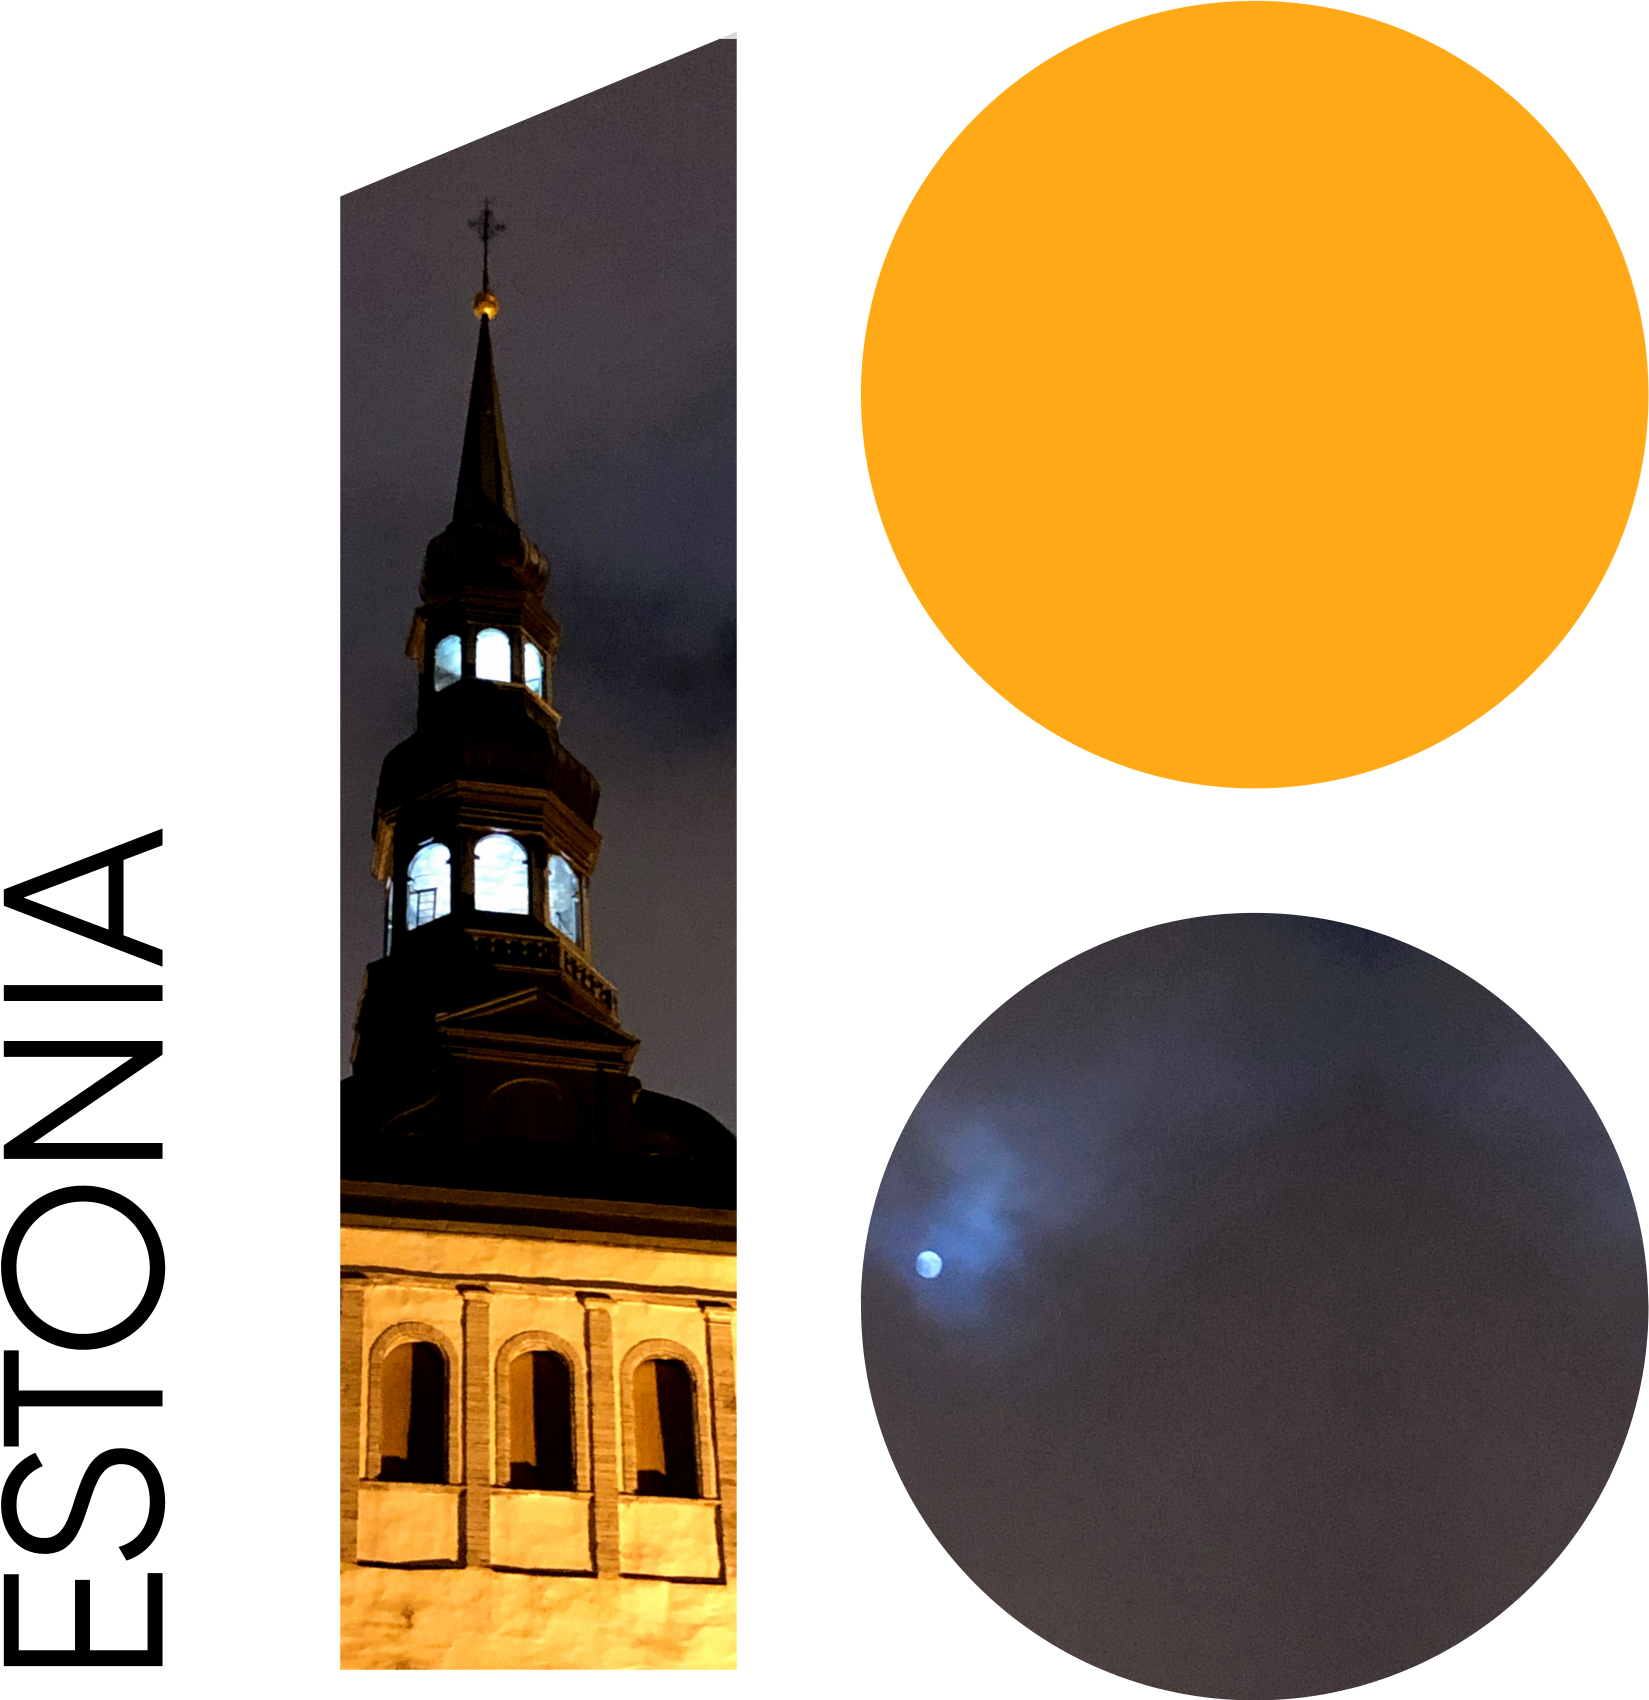 Mivel pont most 100 éves az Észt Köztársaság, a város tele van ilyen 100-as logóval. Meg persze weboldalak és appok tömegével, ahol ilyen logókat lehet kreálni. Én is csináltam egyet saját fotóból.